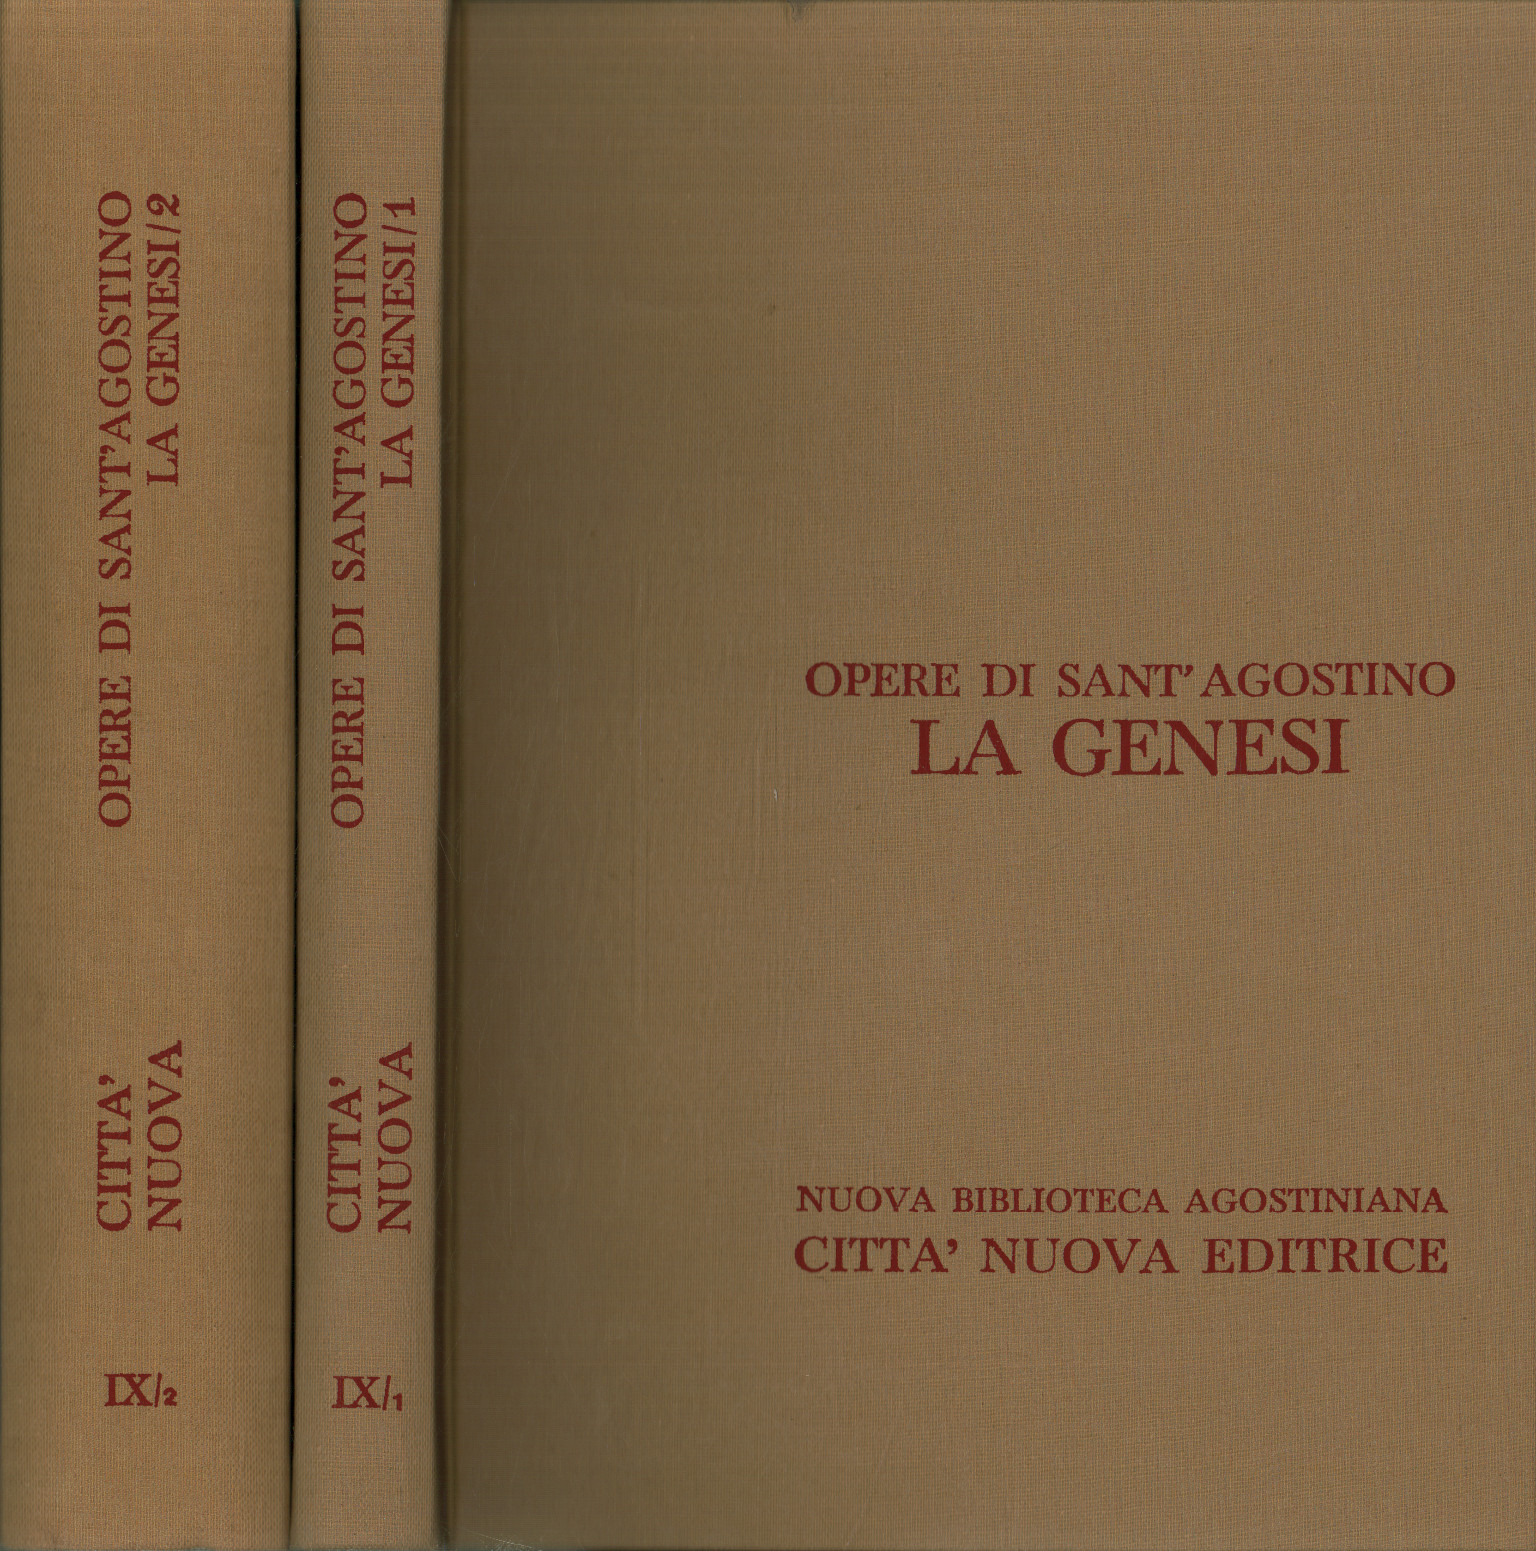 Obras de Sant'Agostino. el gen